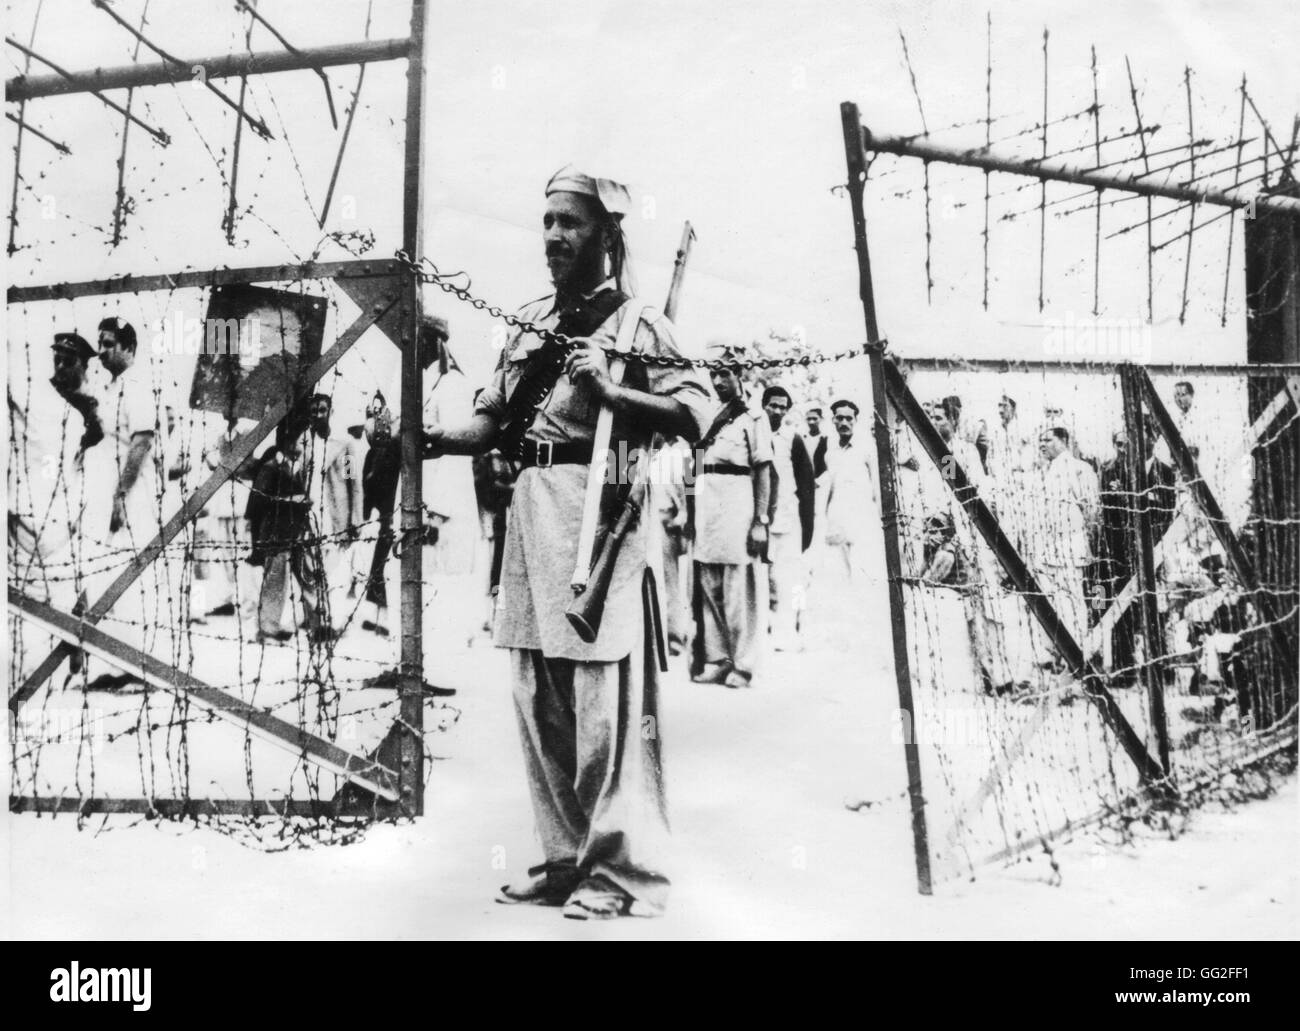 1947, führt die wichtigsten Flüchtling Evakuierung aller Zeiten der britischen Luftwaffe. Tausende von Flüchtlingen in Richtung Indien, aus Pakistan oder umgekehrt transportiert. So wurden 63 Personen in einer Dakota transportiert. 13. November 1947 Ainsi Stockfoto